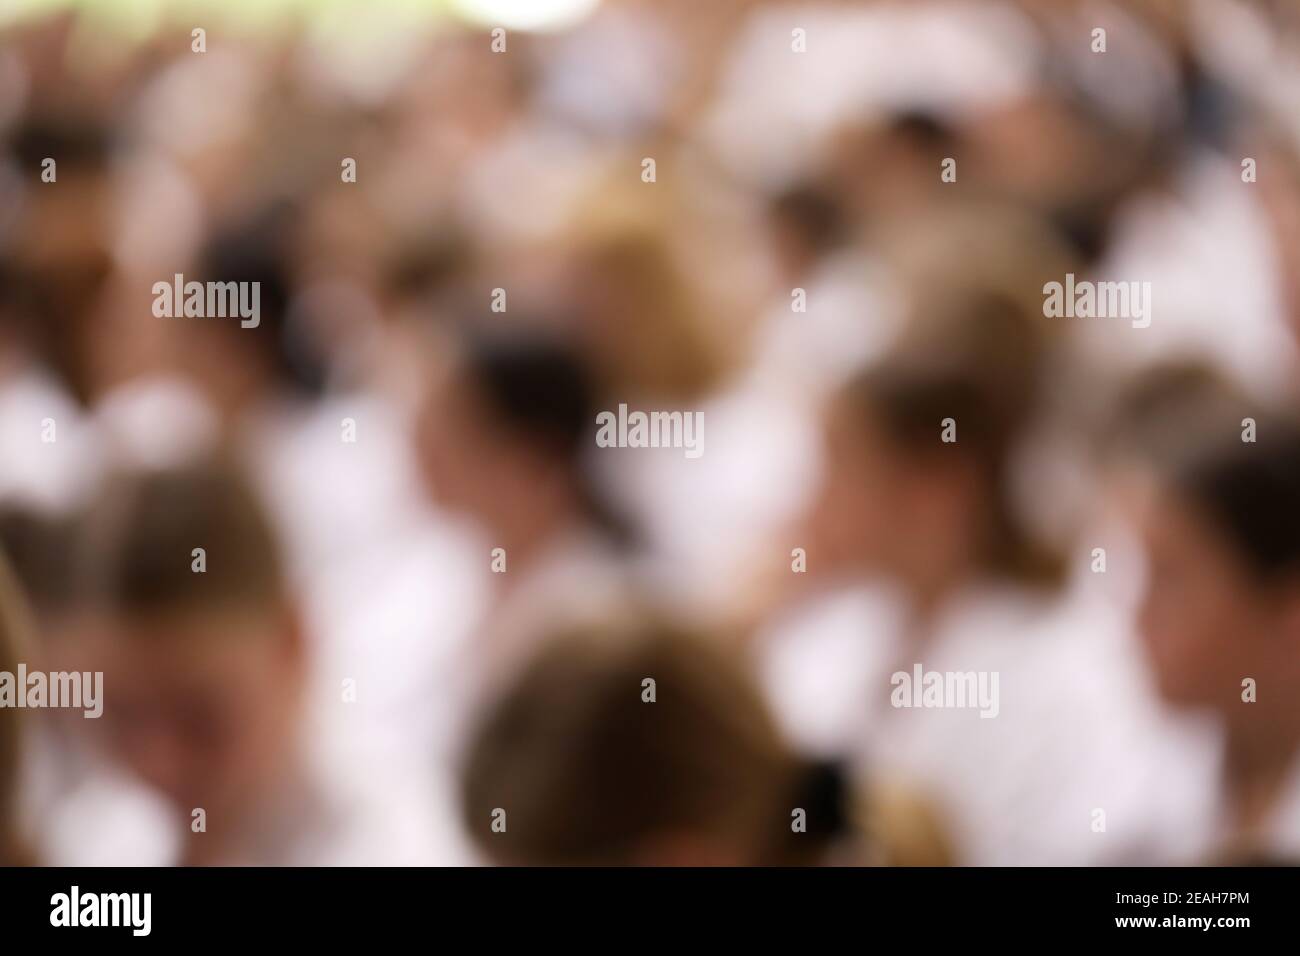 Un cliché artistique flou délibéré d'un grand groupe de personnes floues, toutes portant des chemises blanches face, assis ou marchant dans la même direction Banque D'Images